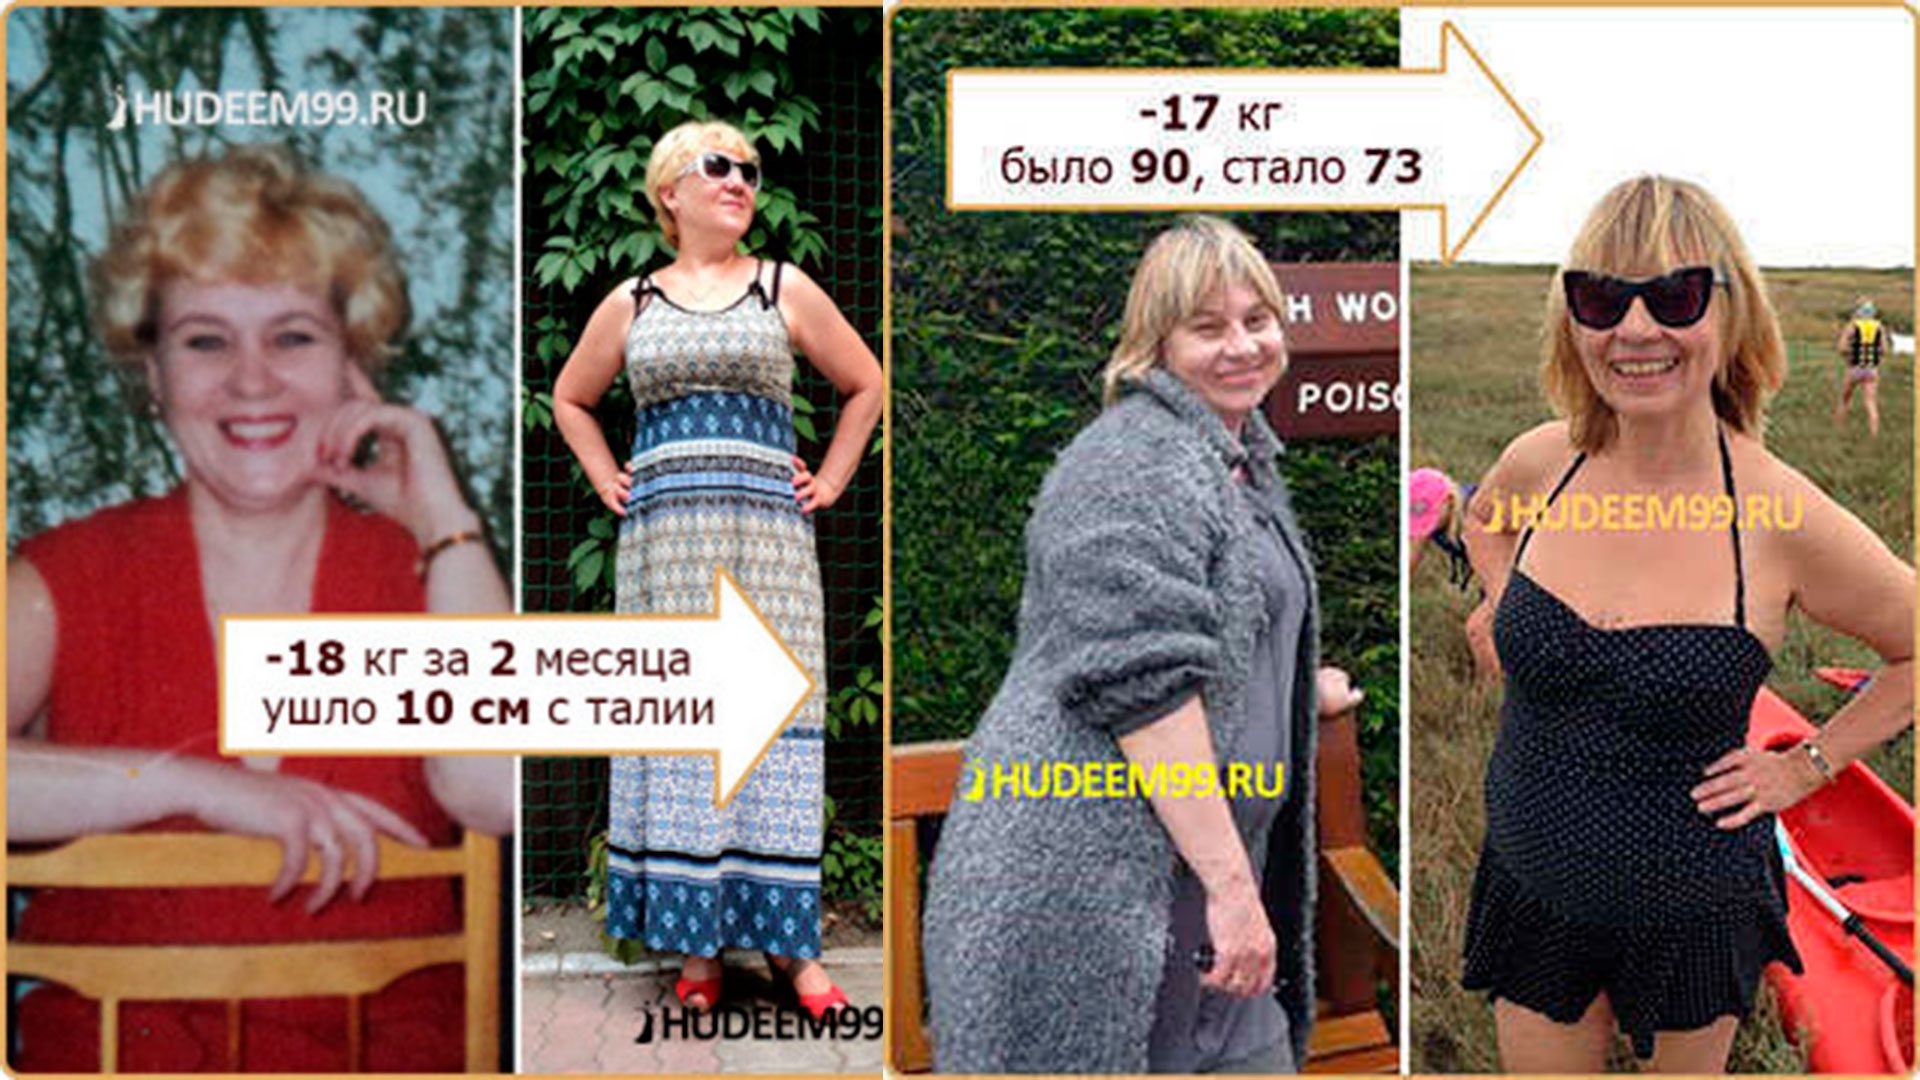 Результаты до и после похудения.